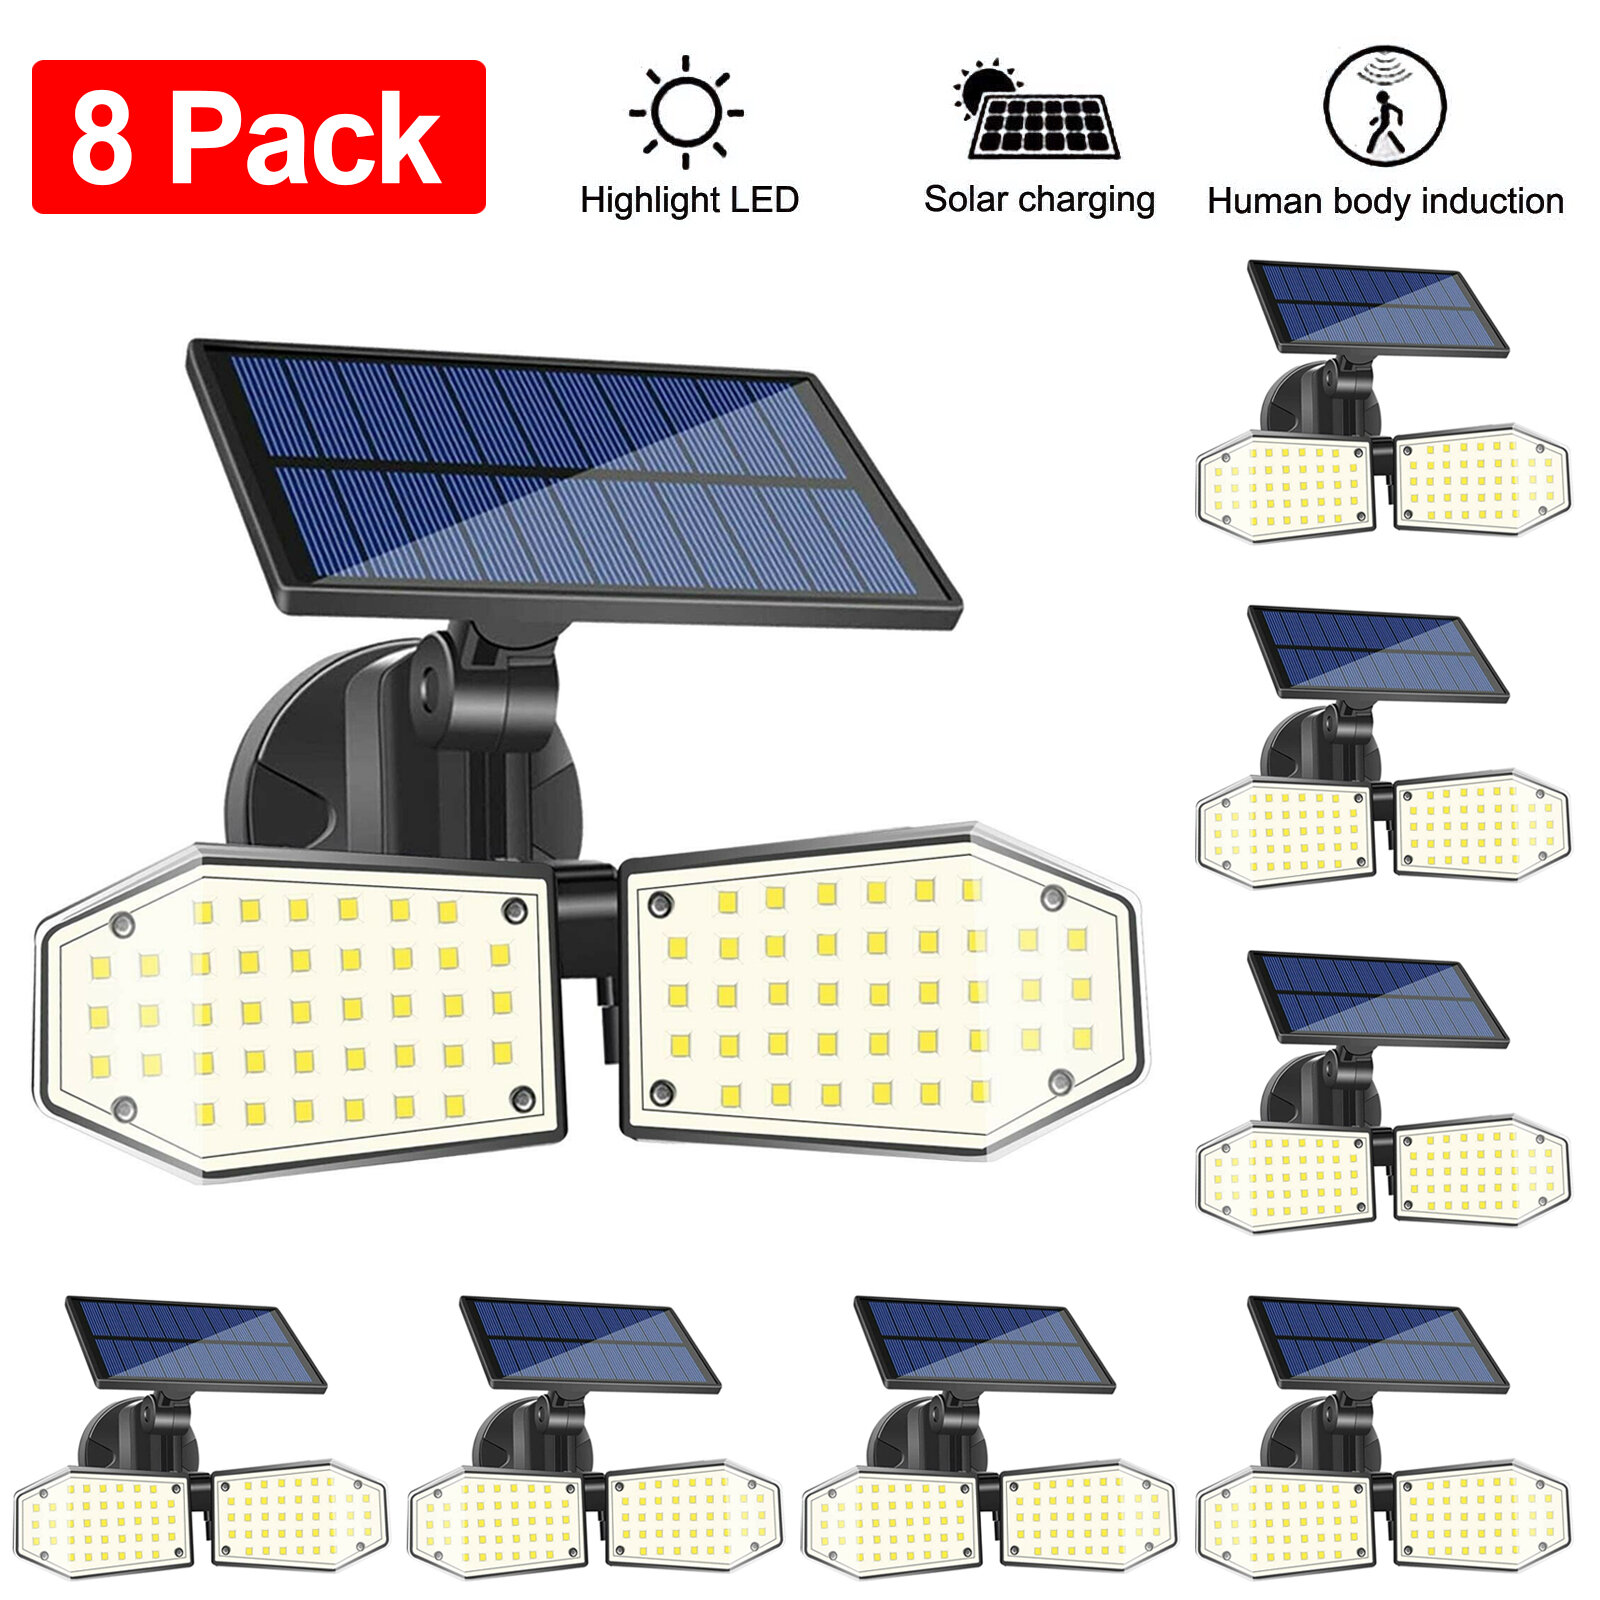 8-PACK 100 LED Solar Powered PIR Motion Detector Light OutDoor For House Garden 